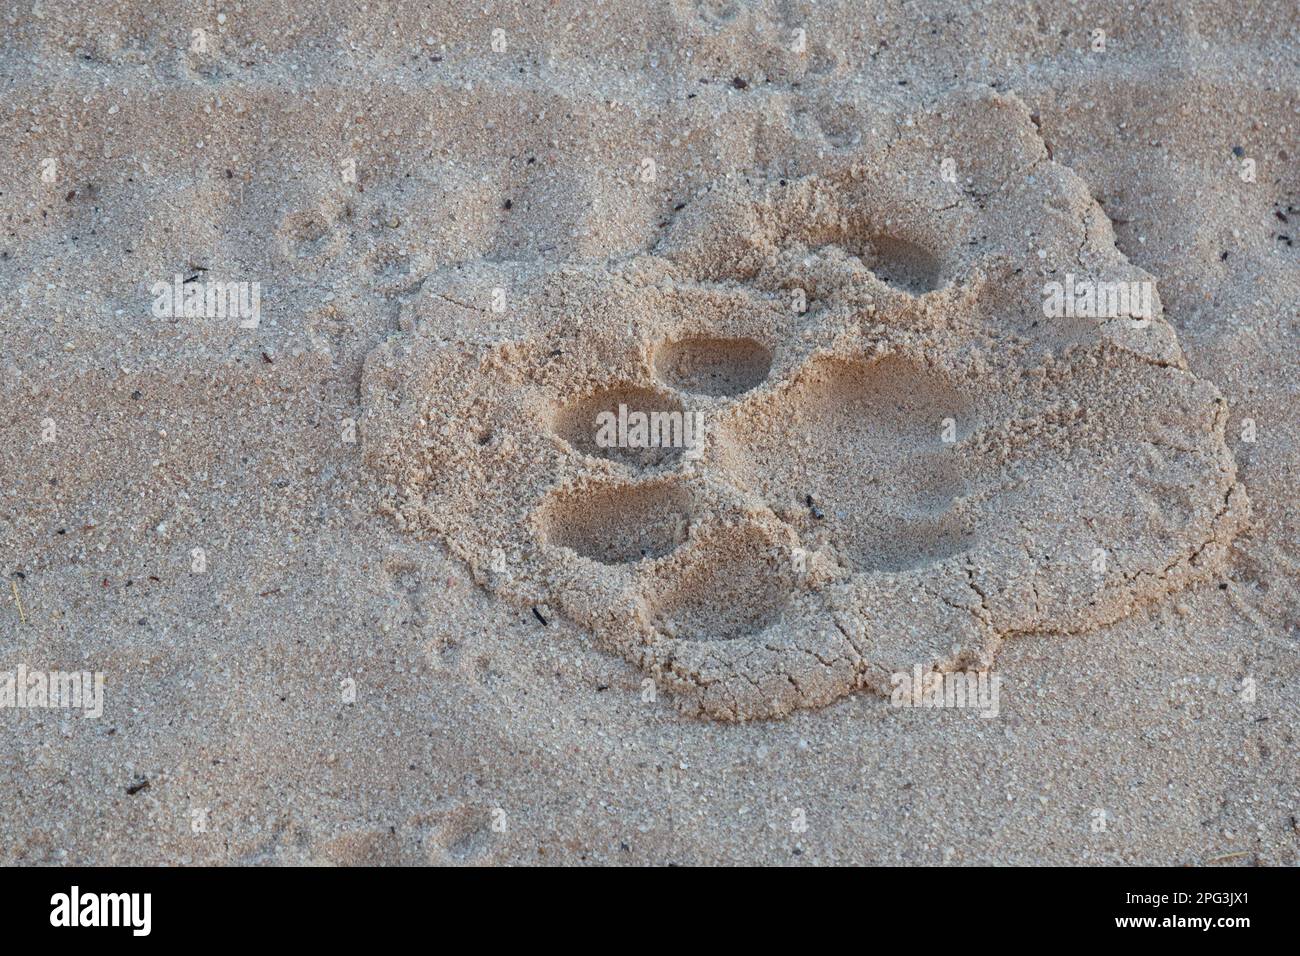 Gros plan d'une piste de lion mâle dans du sable mou Banque D'Images